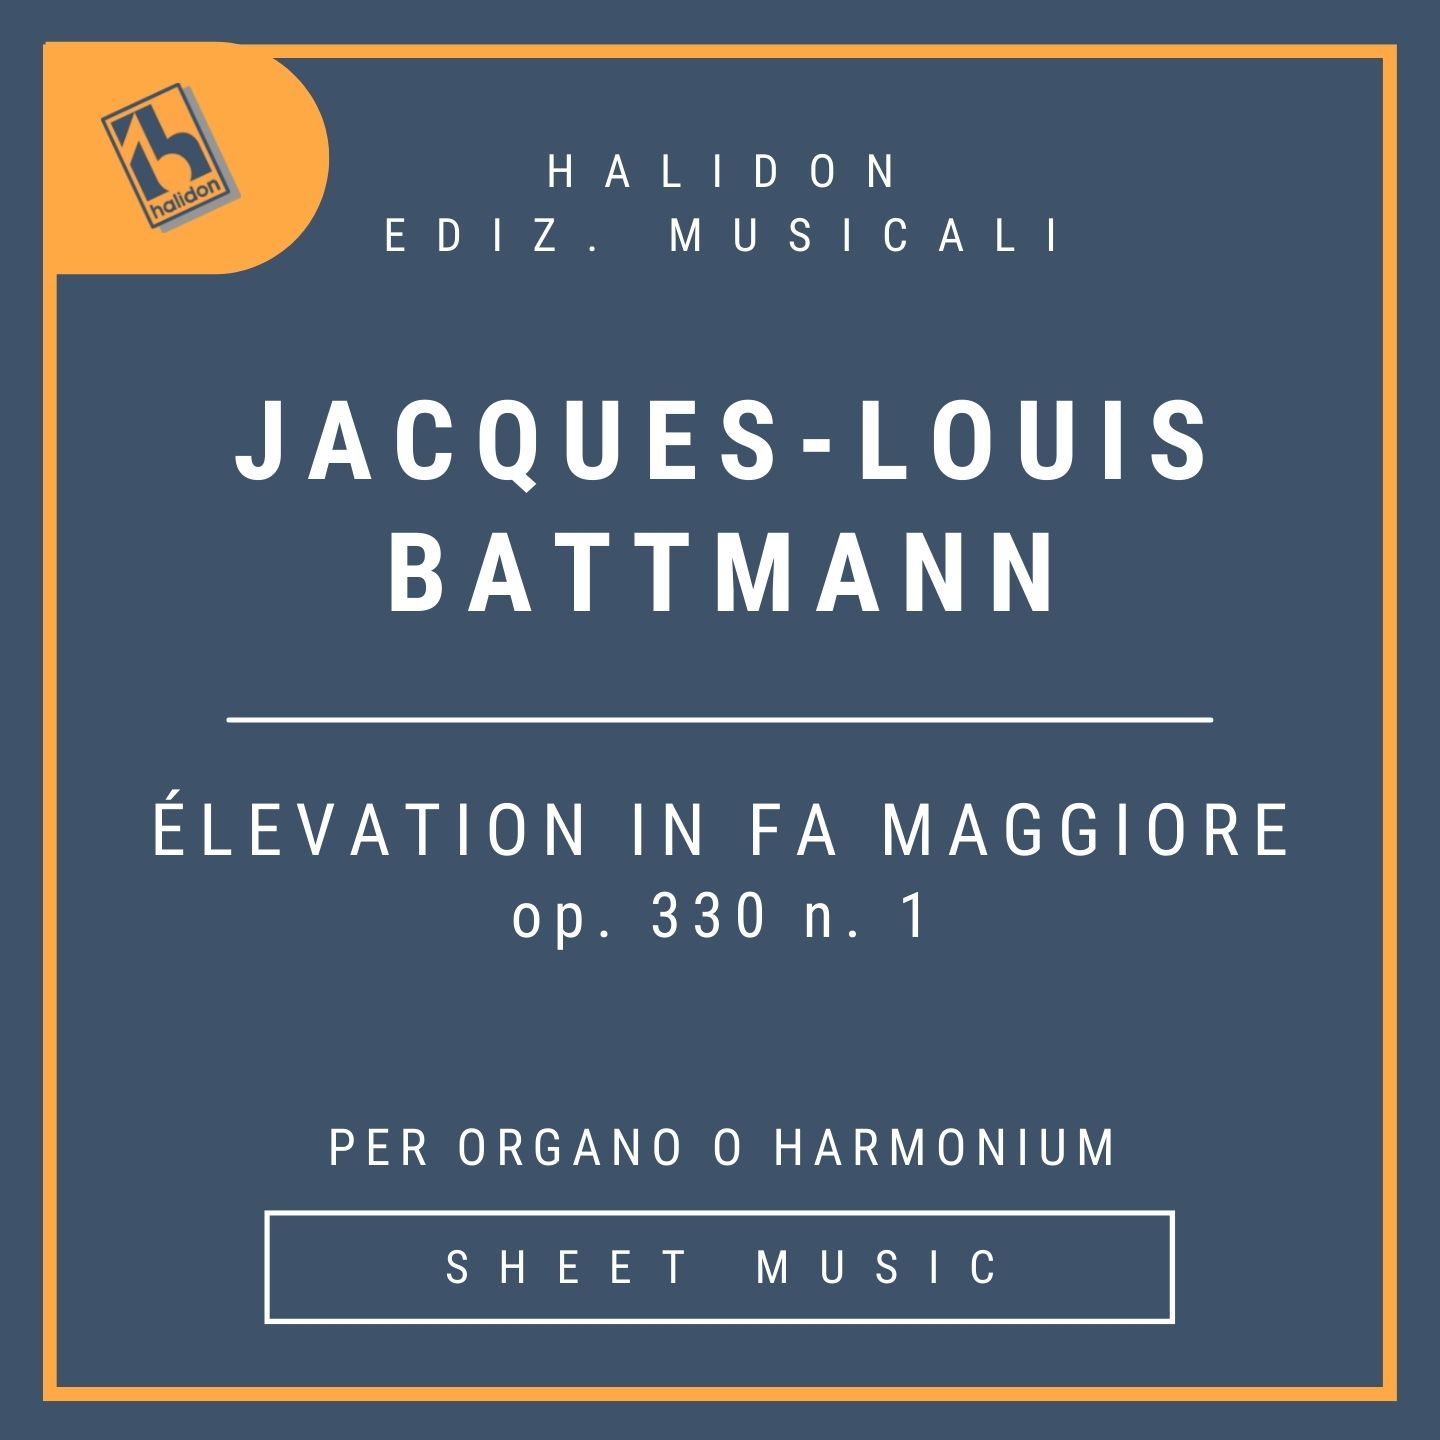 Jacques-Louis Battmann - Élévation op. 330 n. 1 in F major for organ